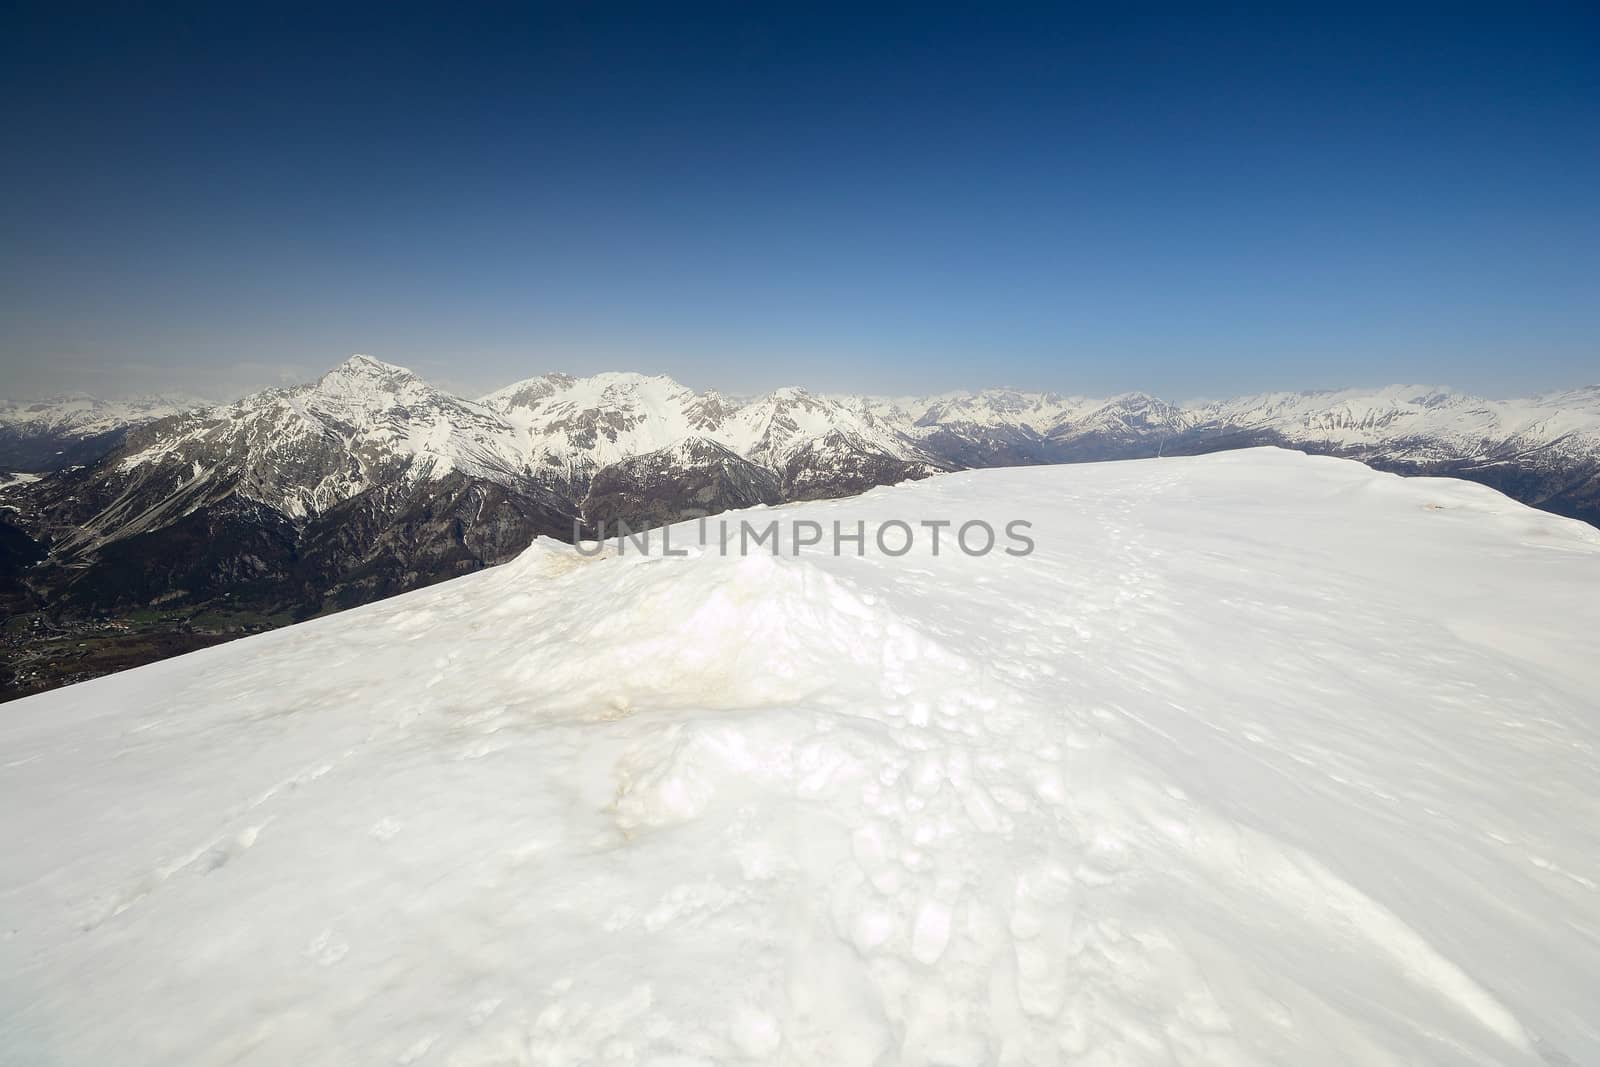 Alpine ski slope by fbxx